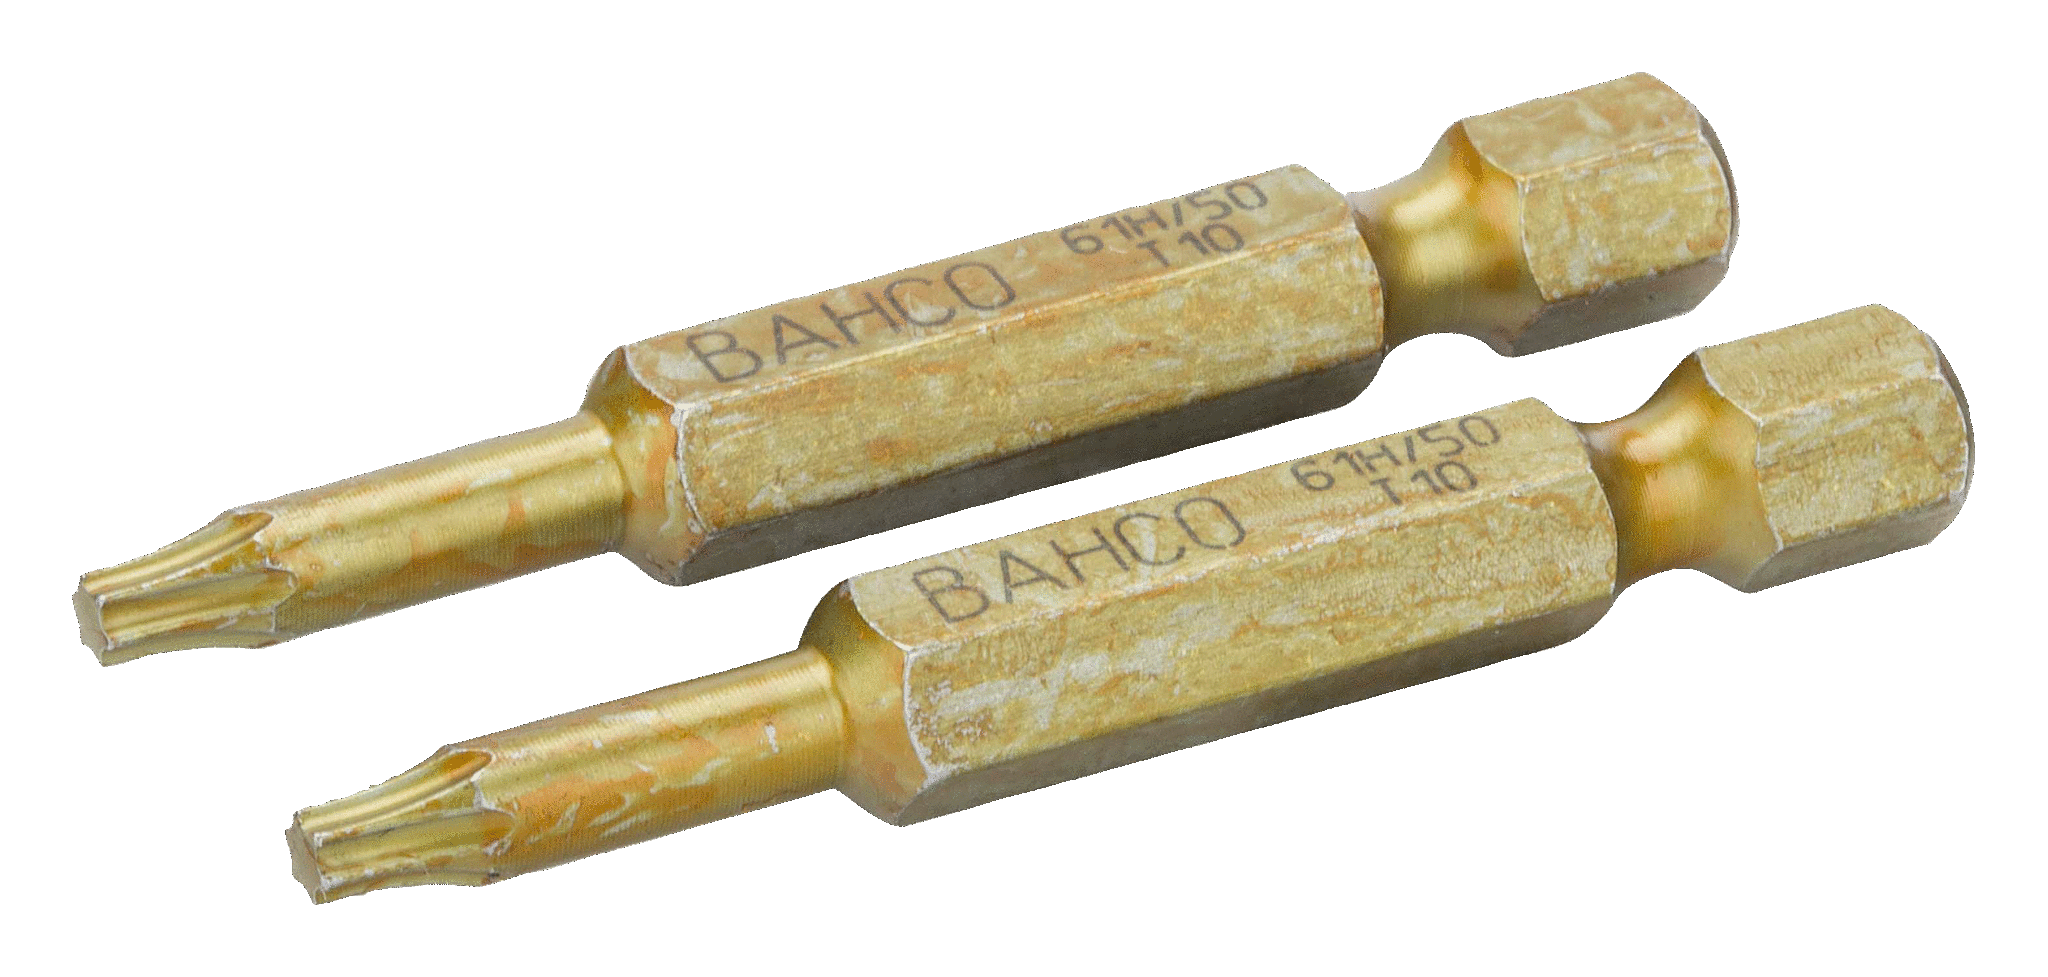 картинка Особо прочные торсионные биты для отверток Torx®, 50 мм BAHCO 61H/50T25 от магазина "Элит-инструмент"